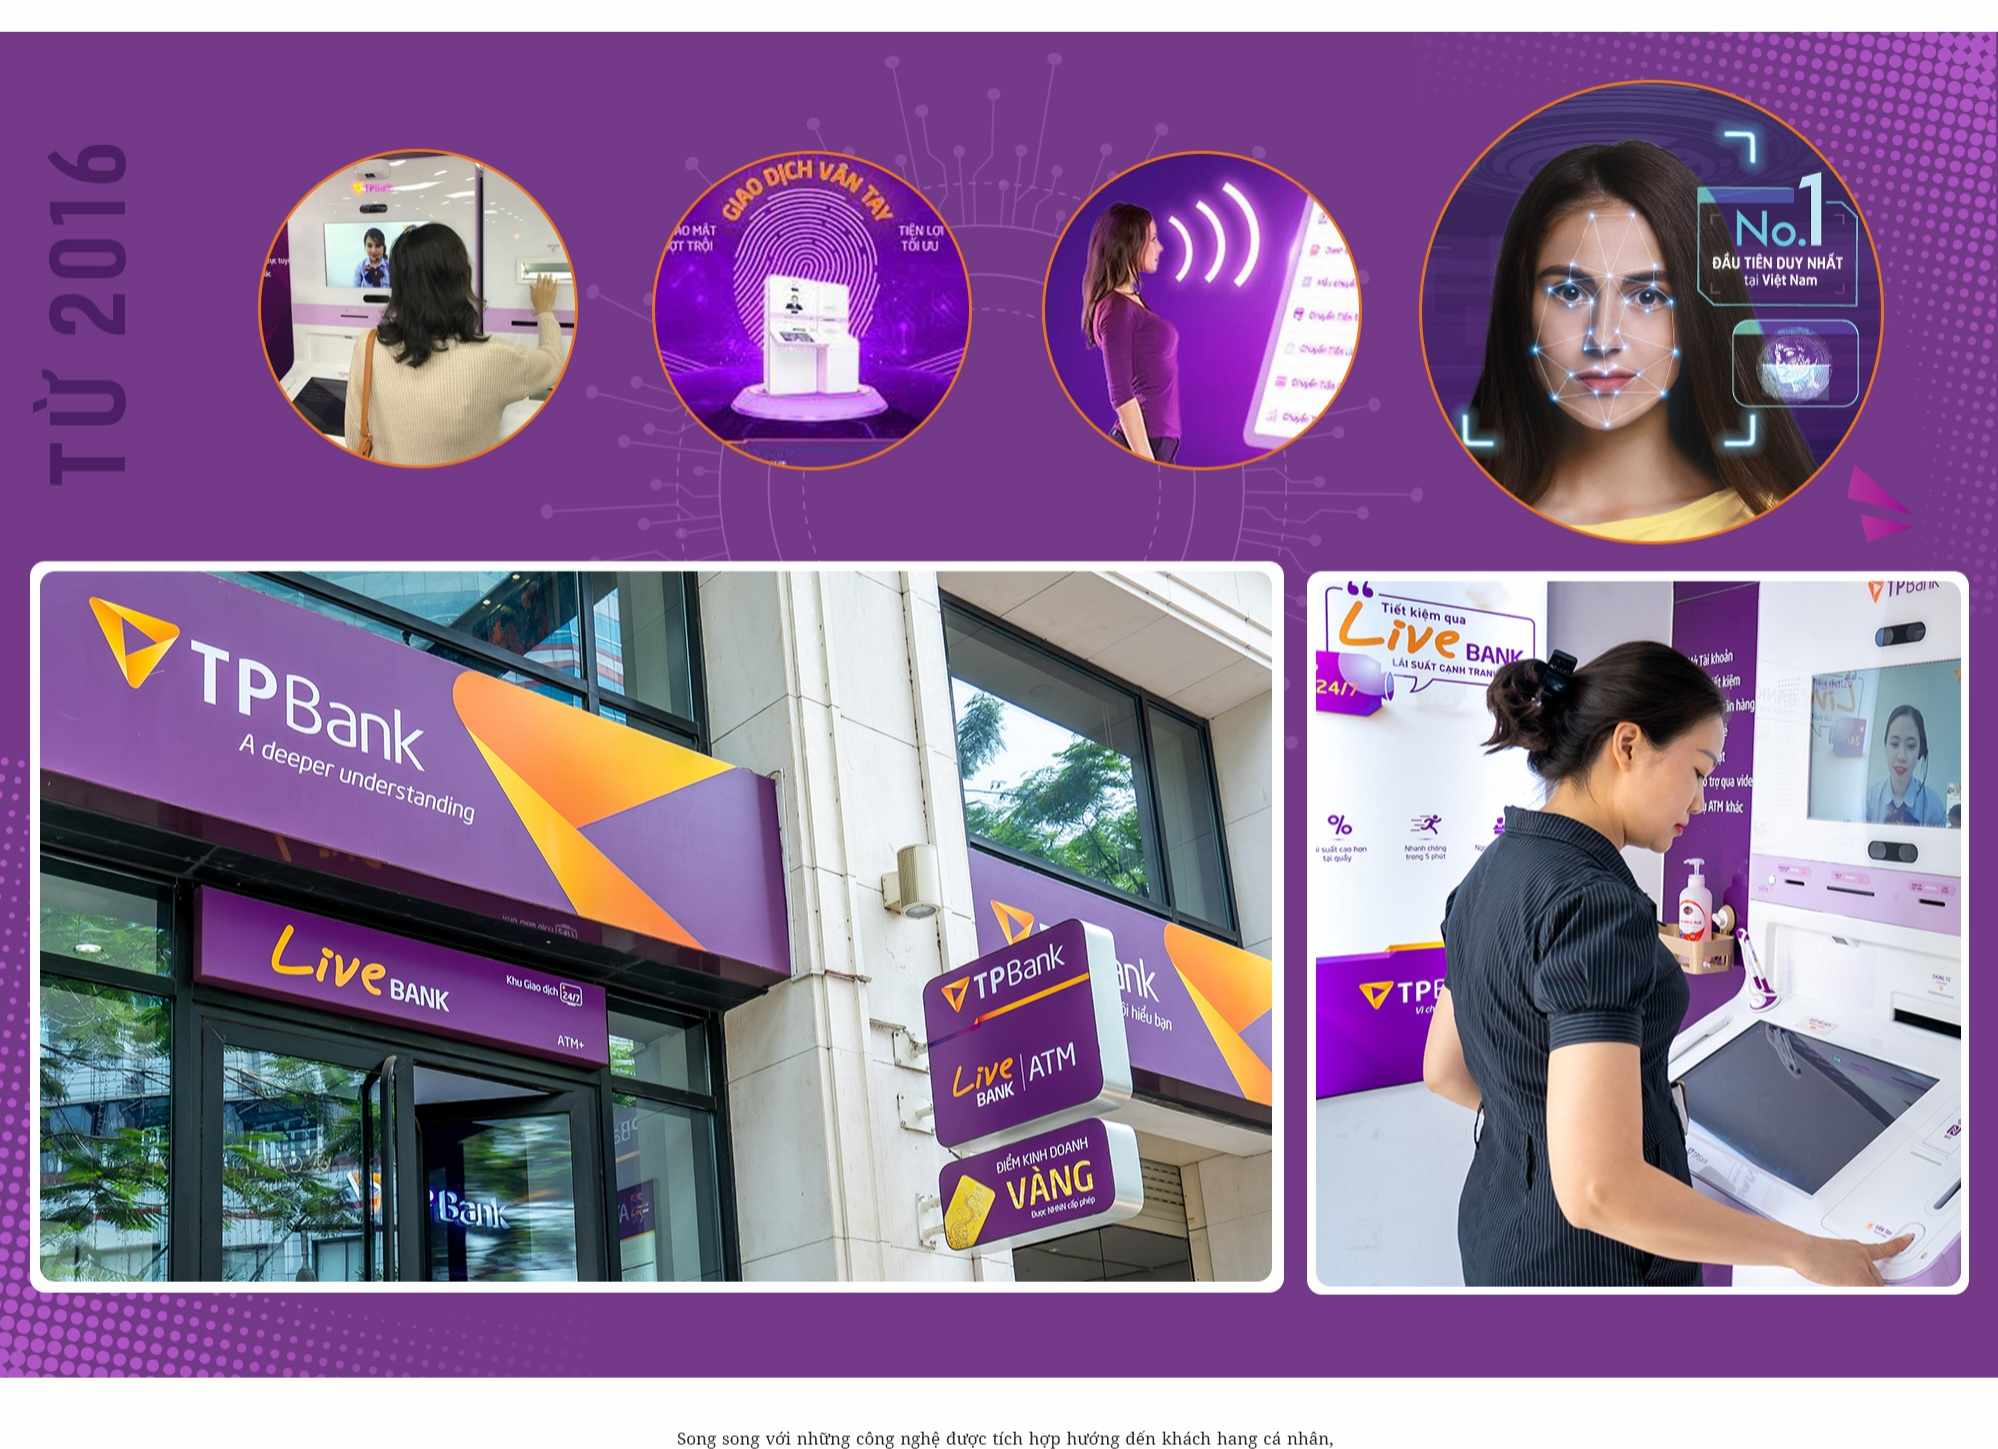 ngân hàng tự động LiveBank 24/7 ngày càng được nâng cấp và hoàn thiện